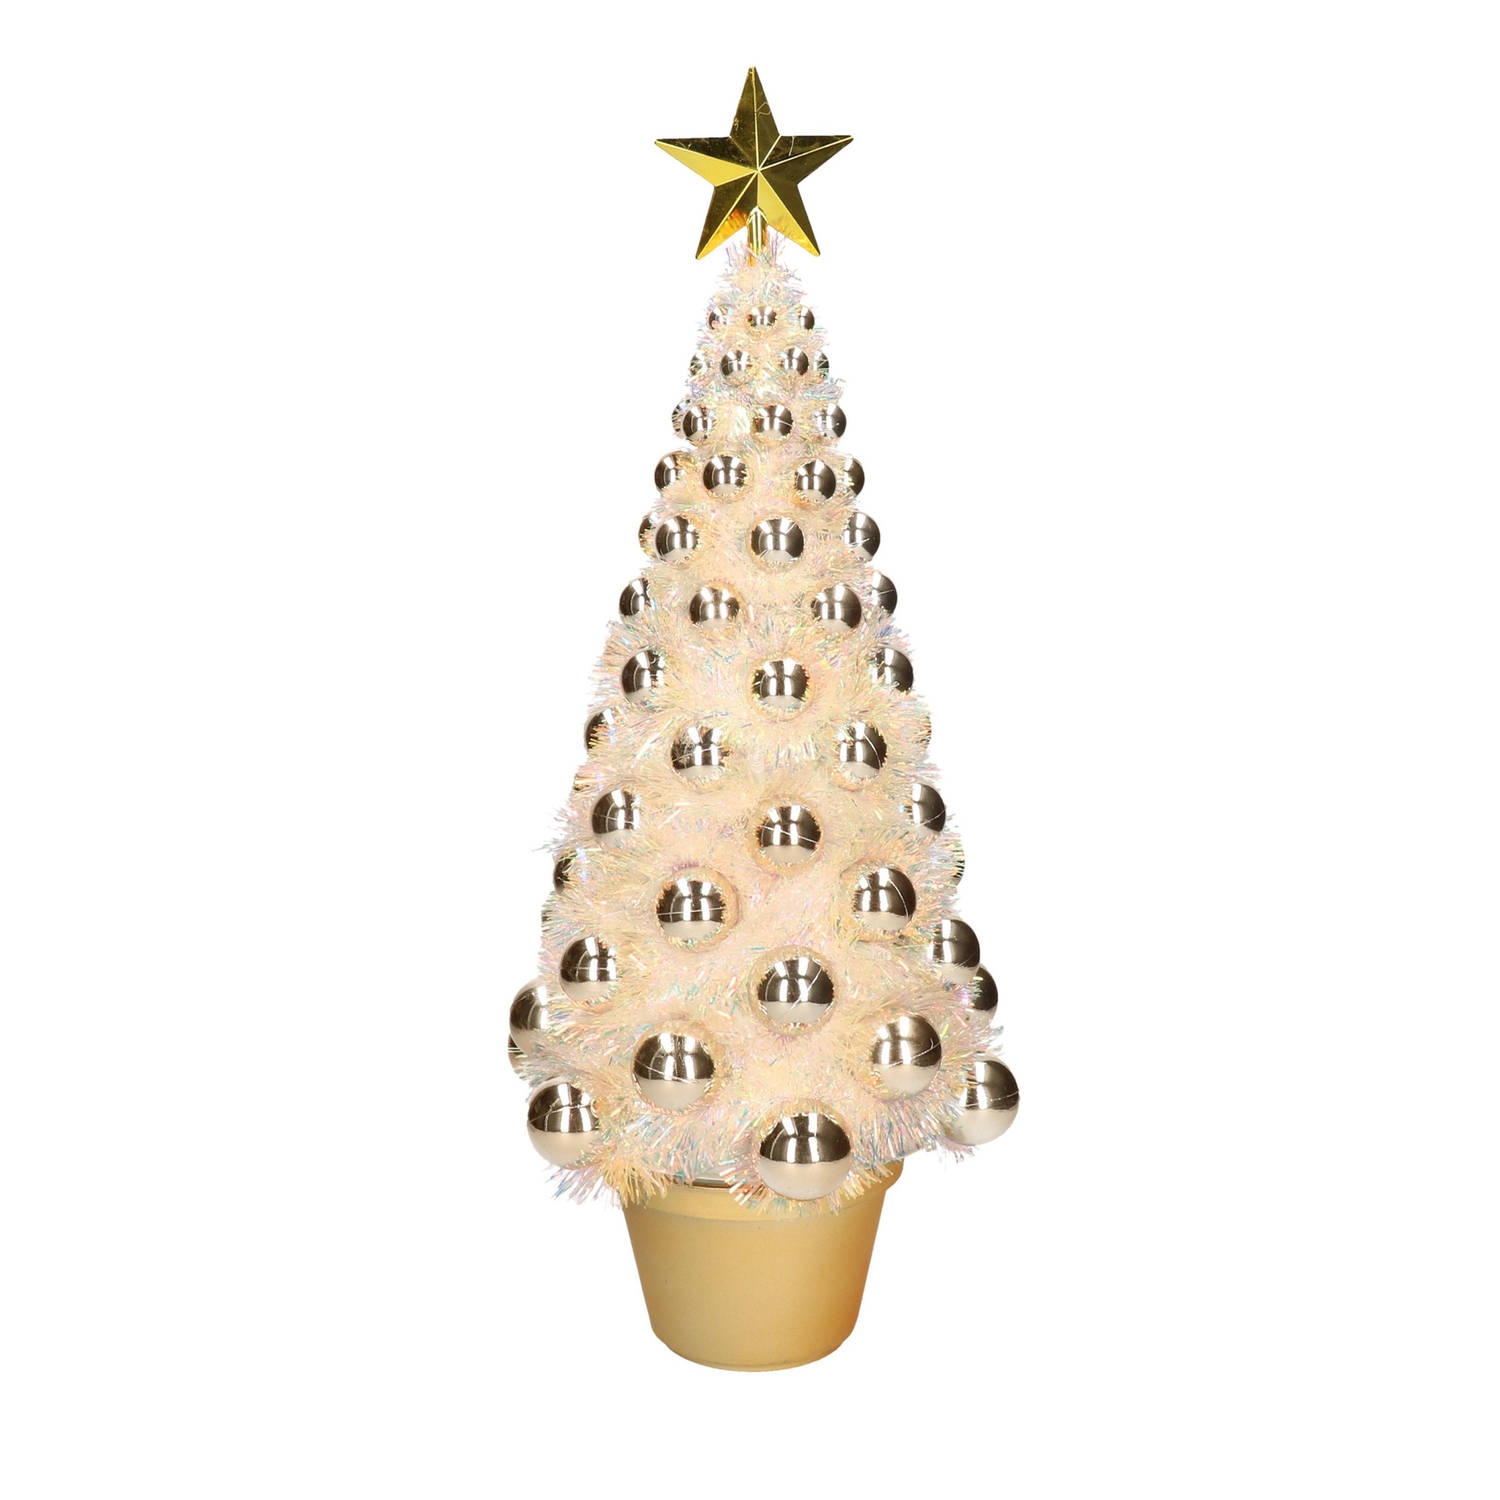 Complete mini kunst kerstboom / kunstboom met lichtjes cm - Kunstkerstboom |